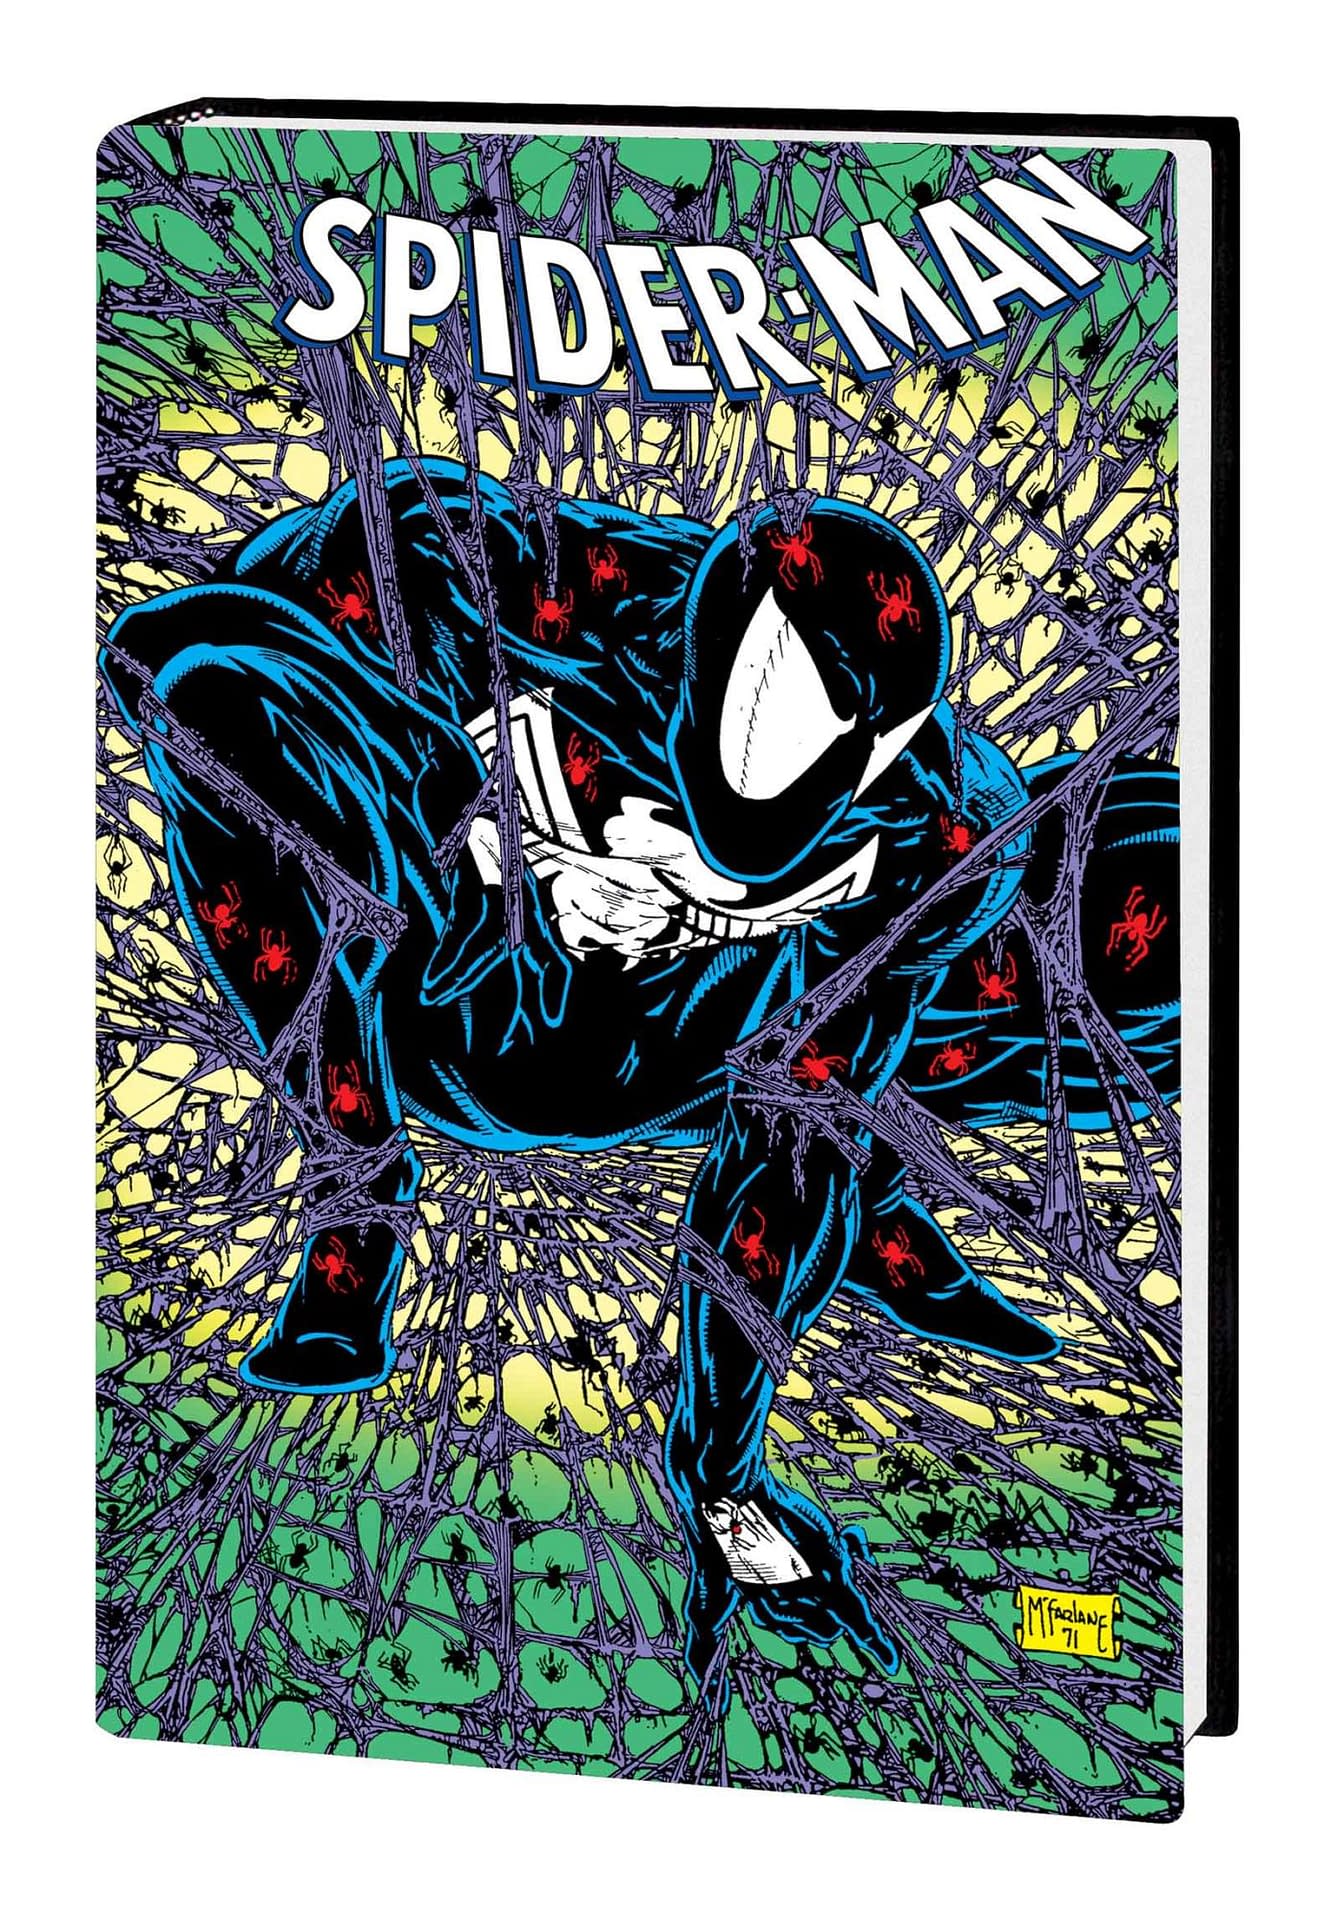 特注オーダー Reilly Ben 「レア」Spider-Man Omnibus 1 Vol. 洋書